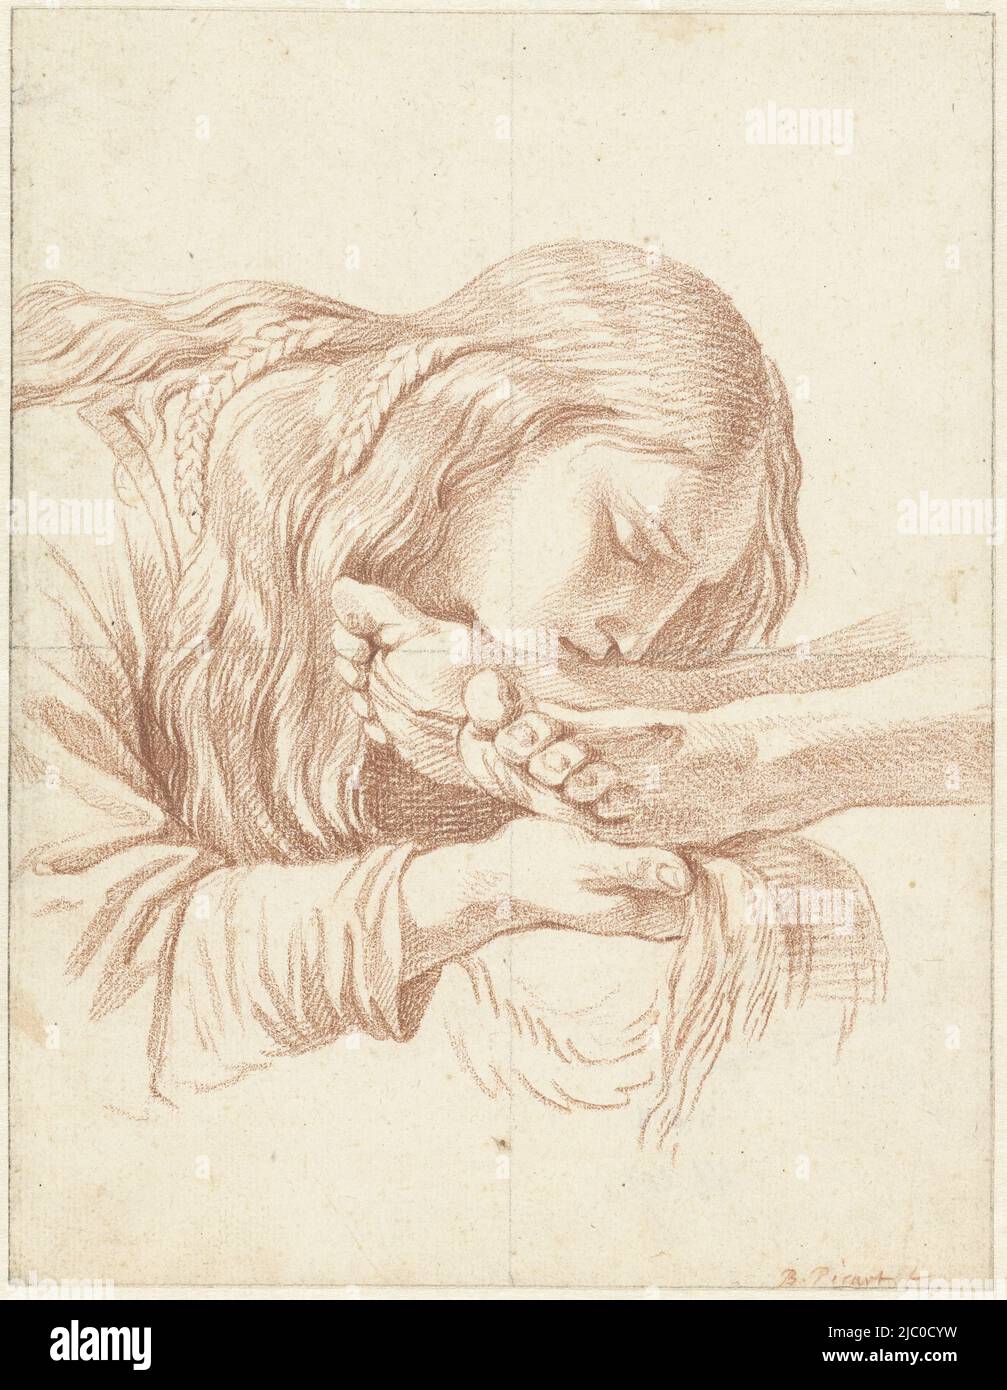 Maria Maddalena bacia i piedi di Cristo, disegnatrice: Bernard Picart, Eustache Lesueur, 1683 - 1733, carta, a 211 mm x l 163 mm Foto Stock